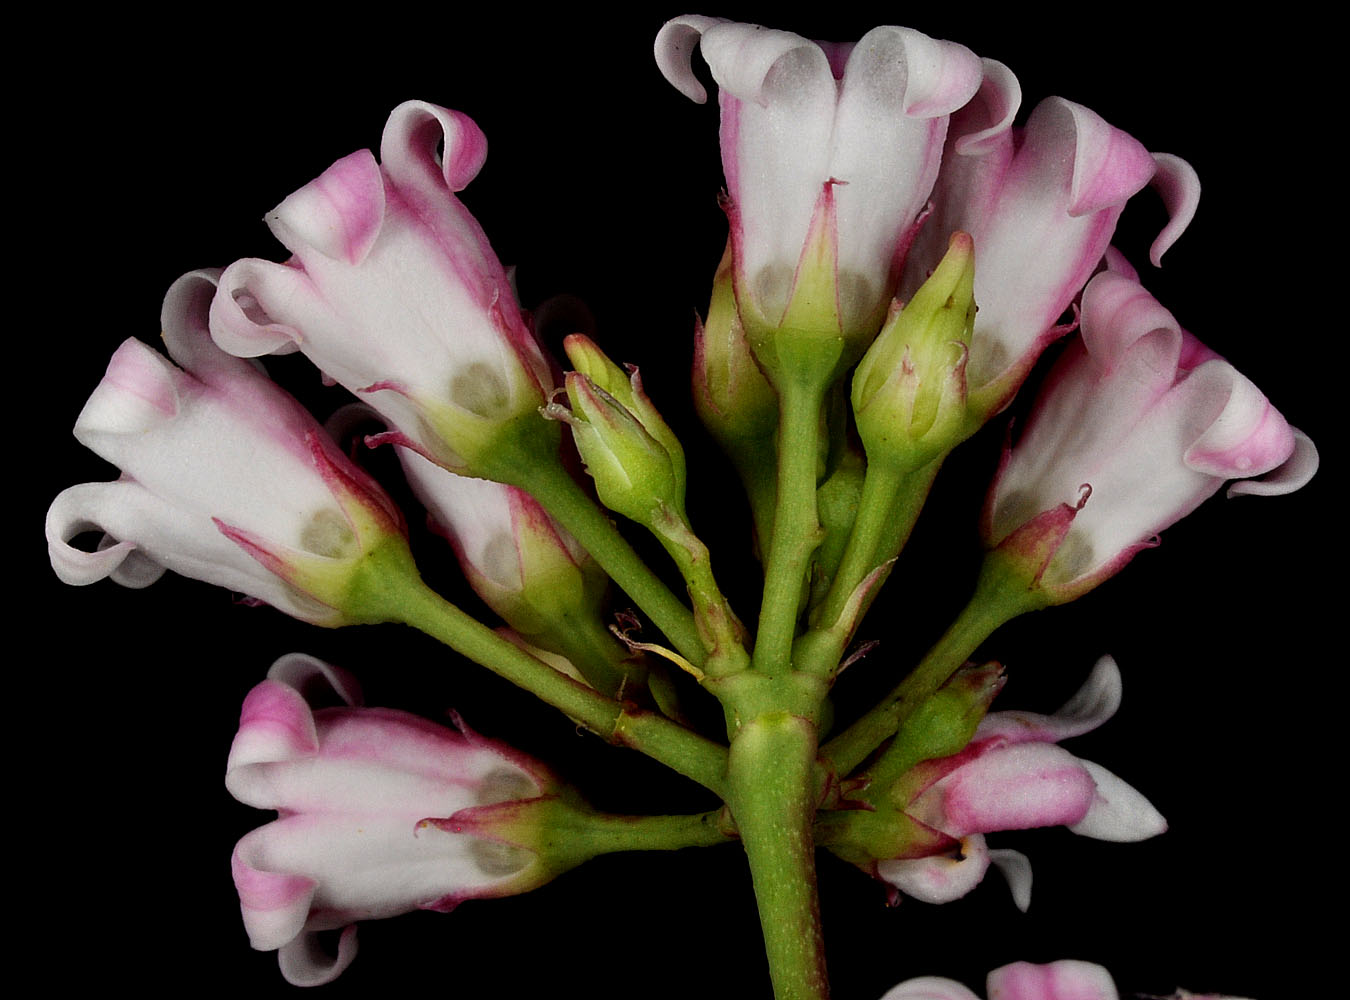 Flora of Eastern Washington Image: Apocynum androcaemifolium